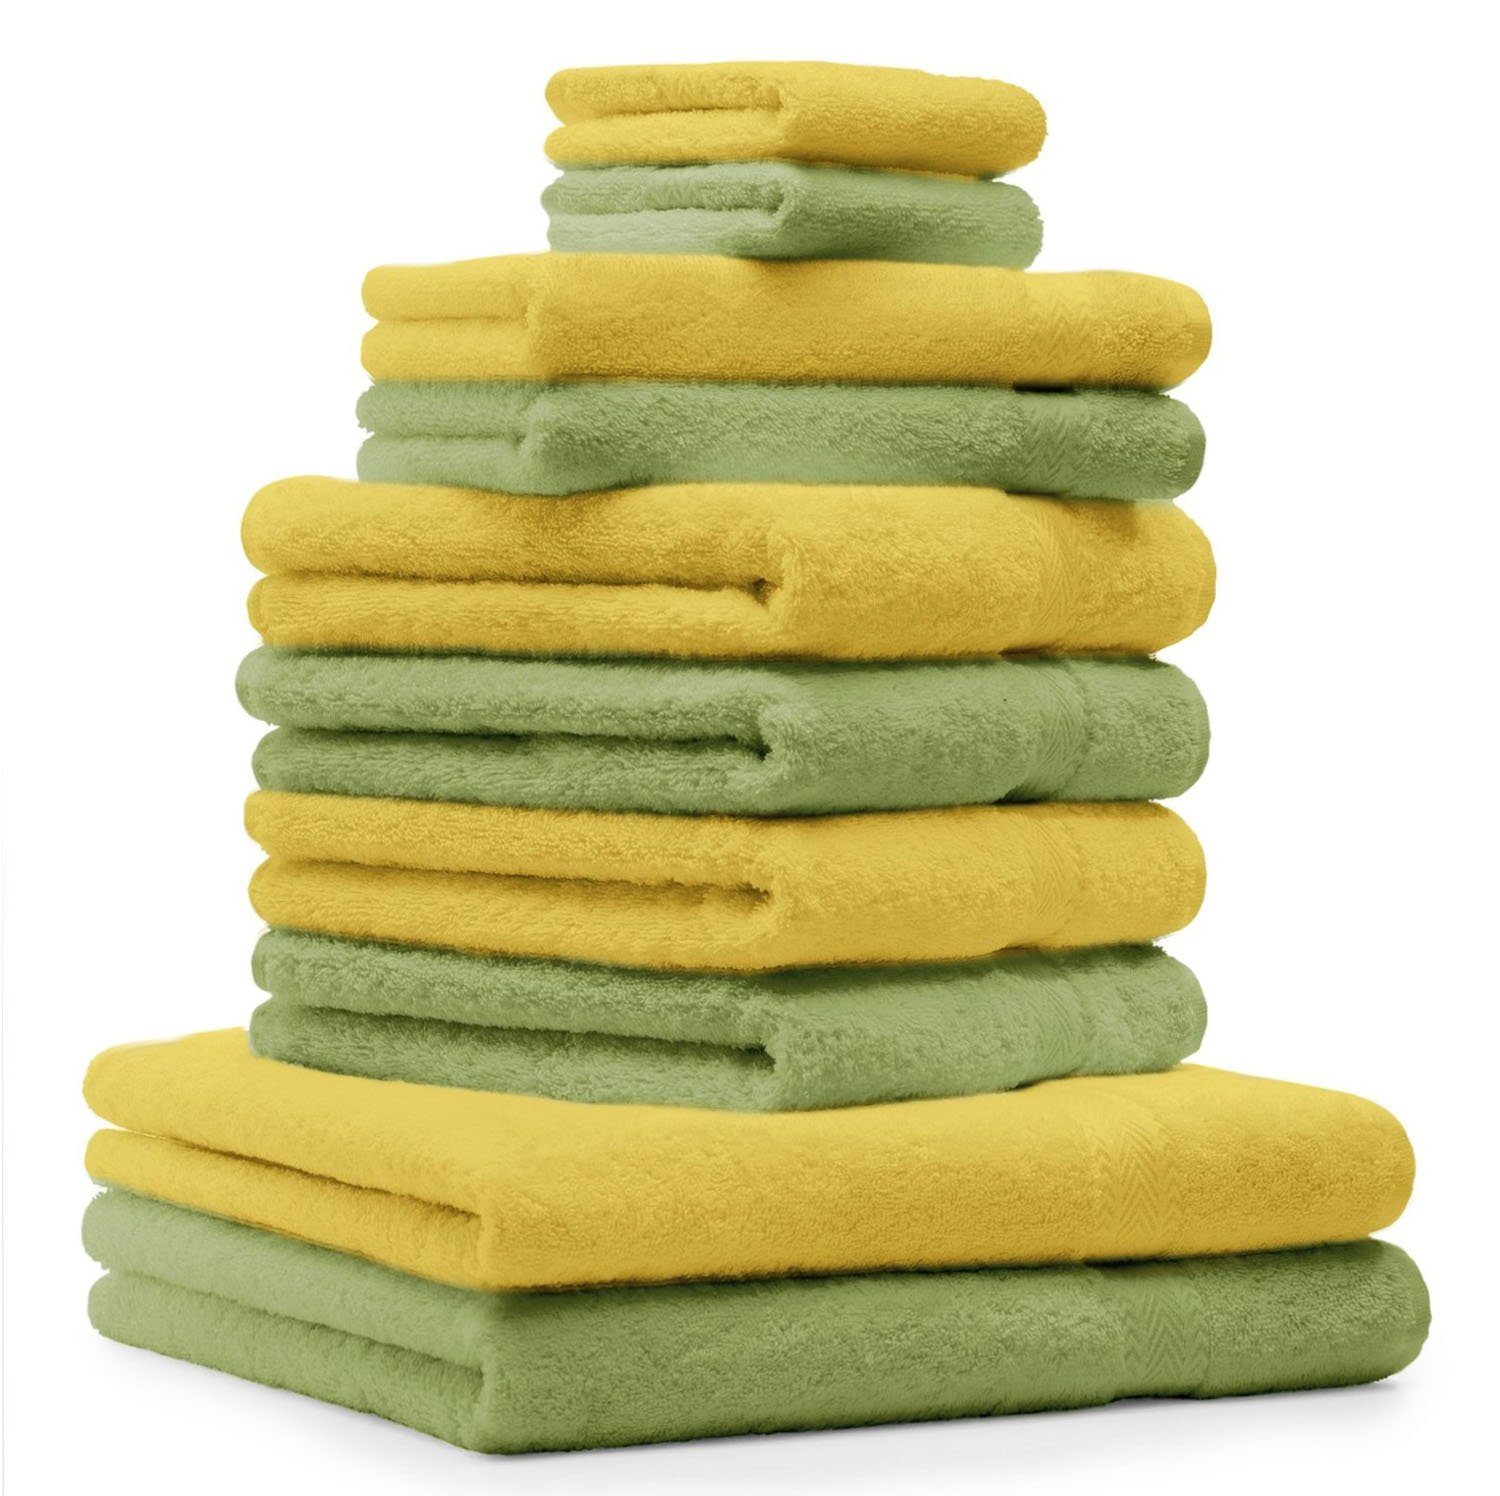 Betz Handtuch Set 10-TLG. Handtuch-Set Classic Farbe apfelgrün und gelb, 1005 Baumwolle